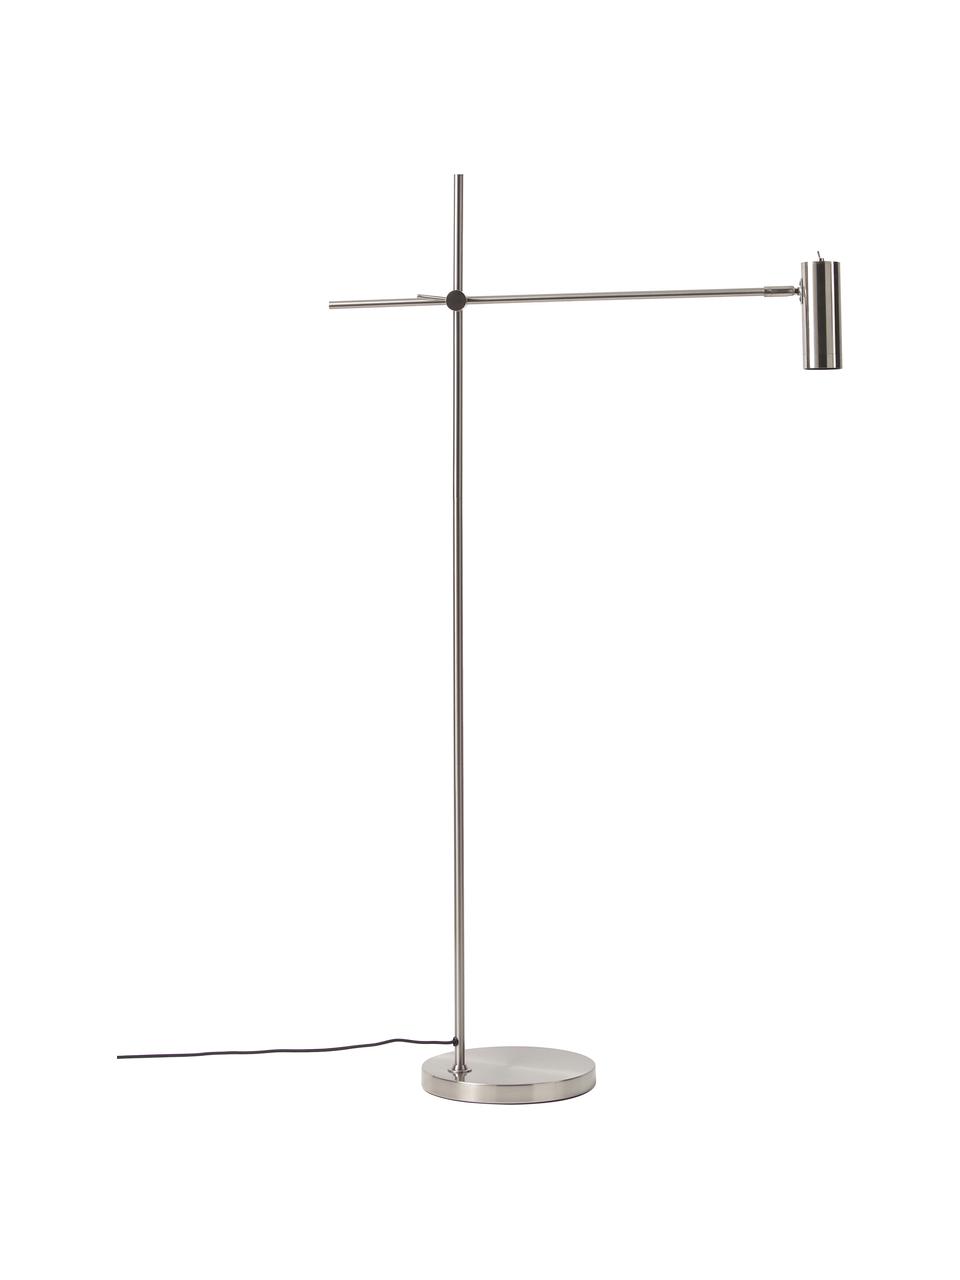 Moderne leeslamp Cassandra in zilverkleur, Lampenkap: gegalvaniseerd metaal, Lampvoet: gegalvaniseerd metaal, Geborsteld zilverkleurig, B 75 cm x H 152 cm